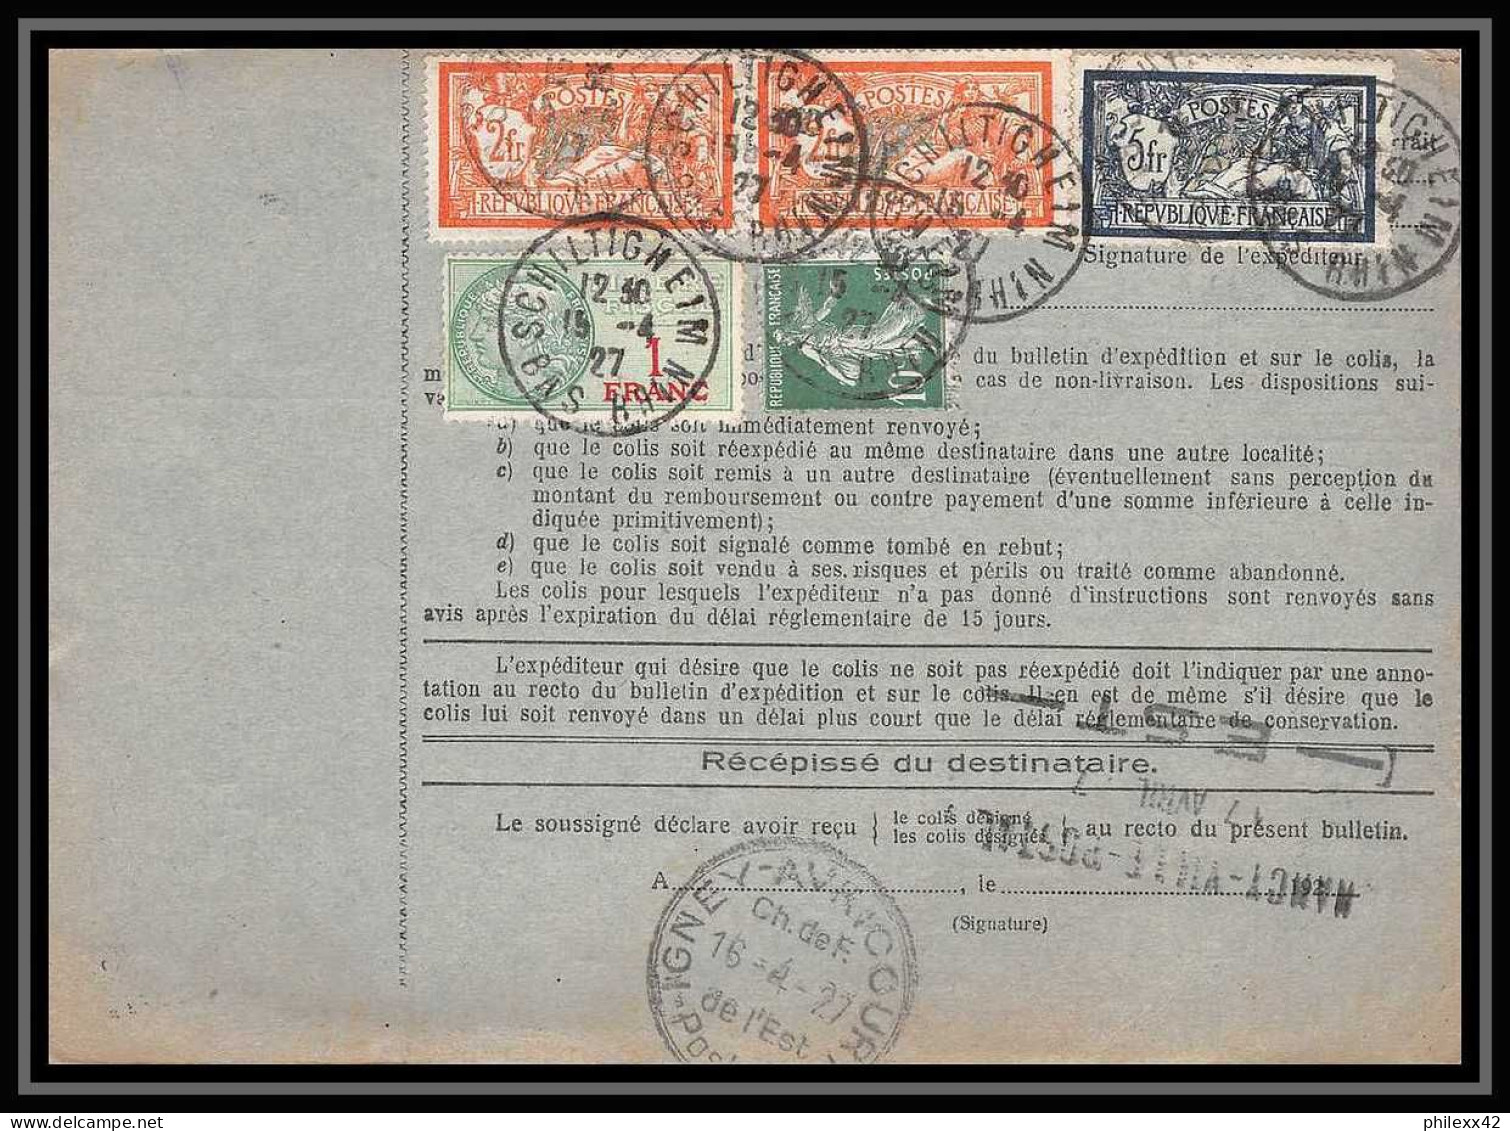 25060 Bulletin D'expédition France Colis Postaux Fiscal Haut Rhin 1927 Schiltigheim Merson 123+145 Valeur Déclarée - Covers & Documents